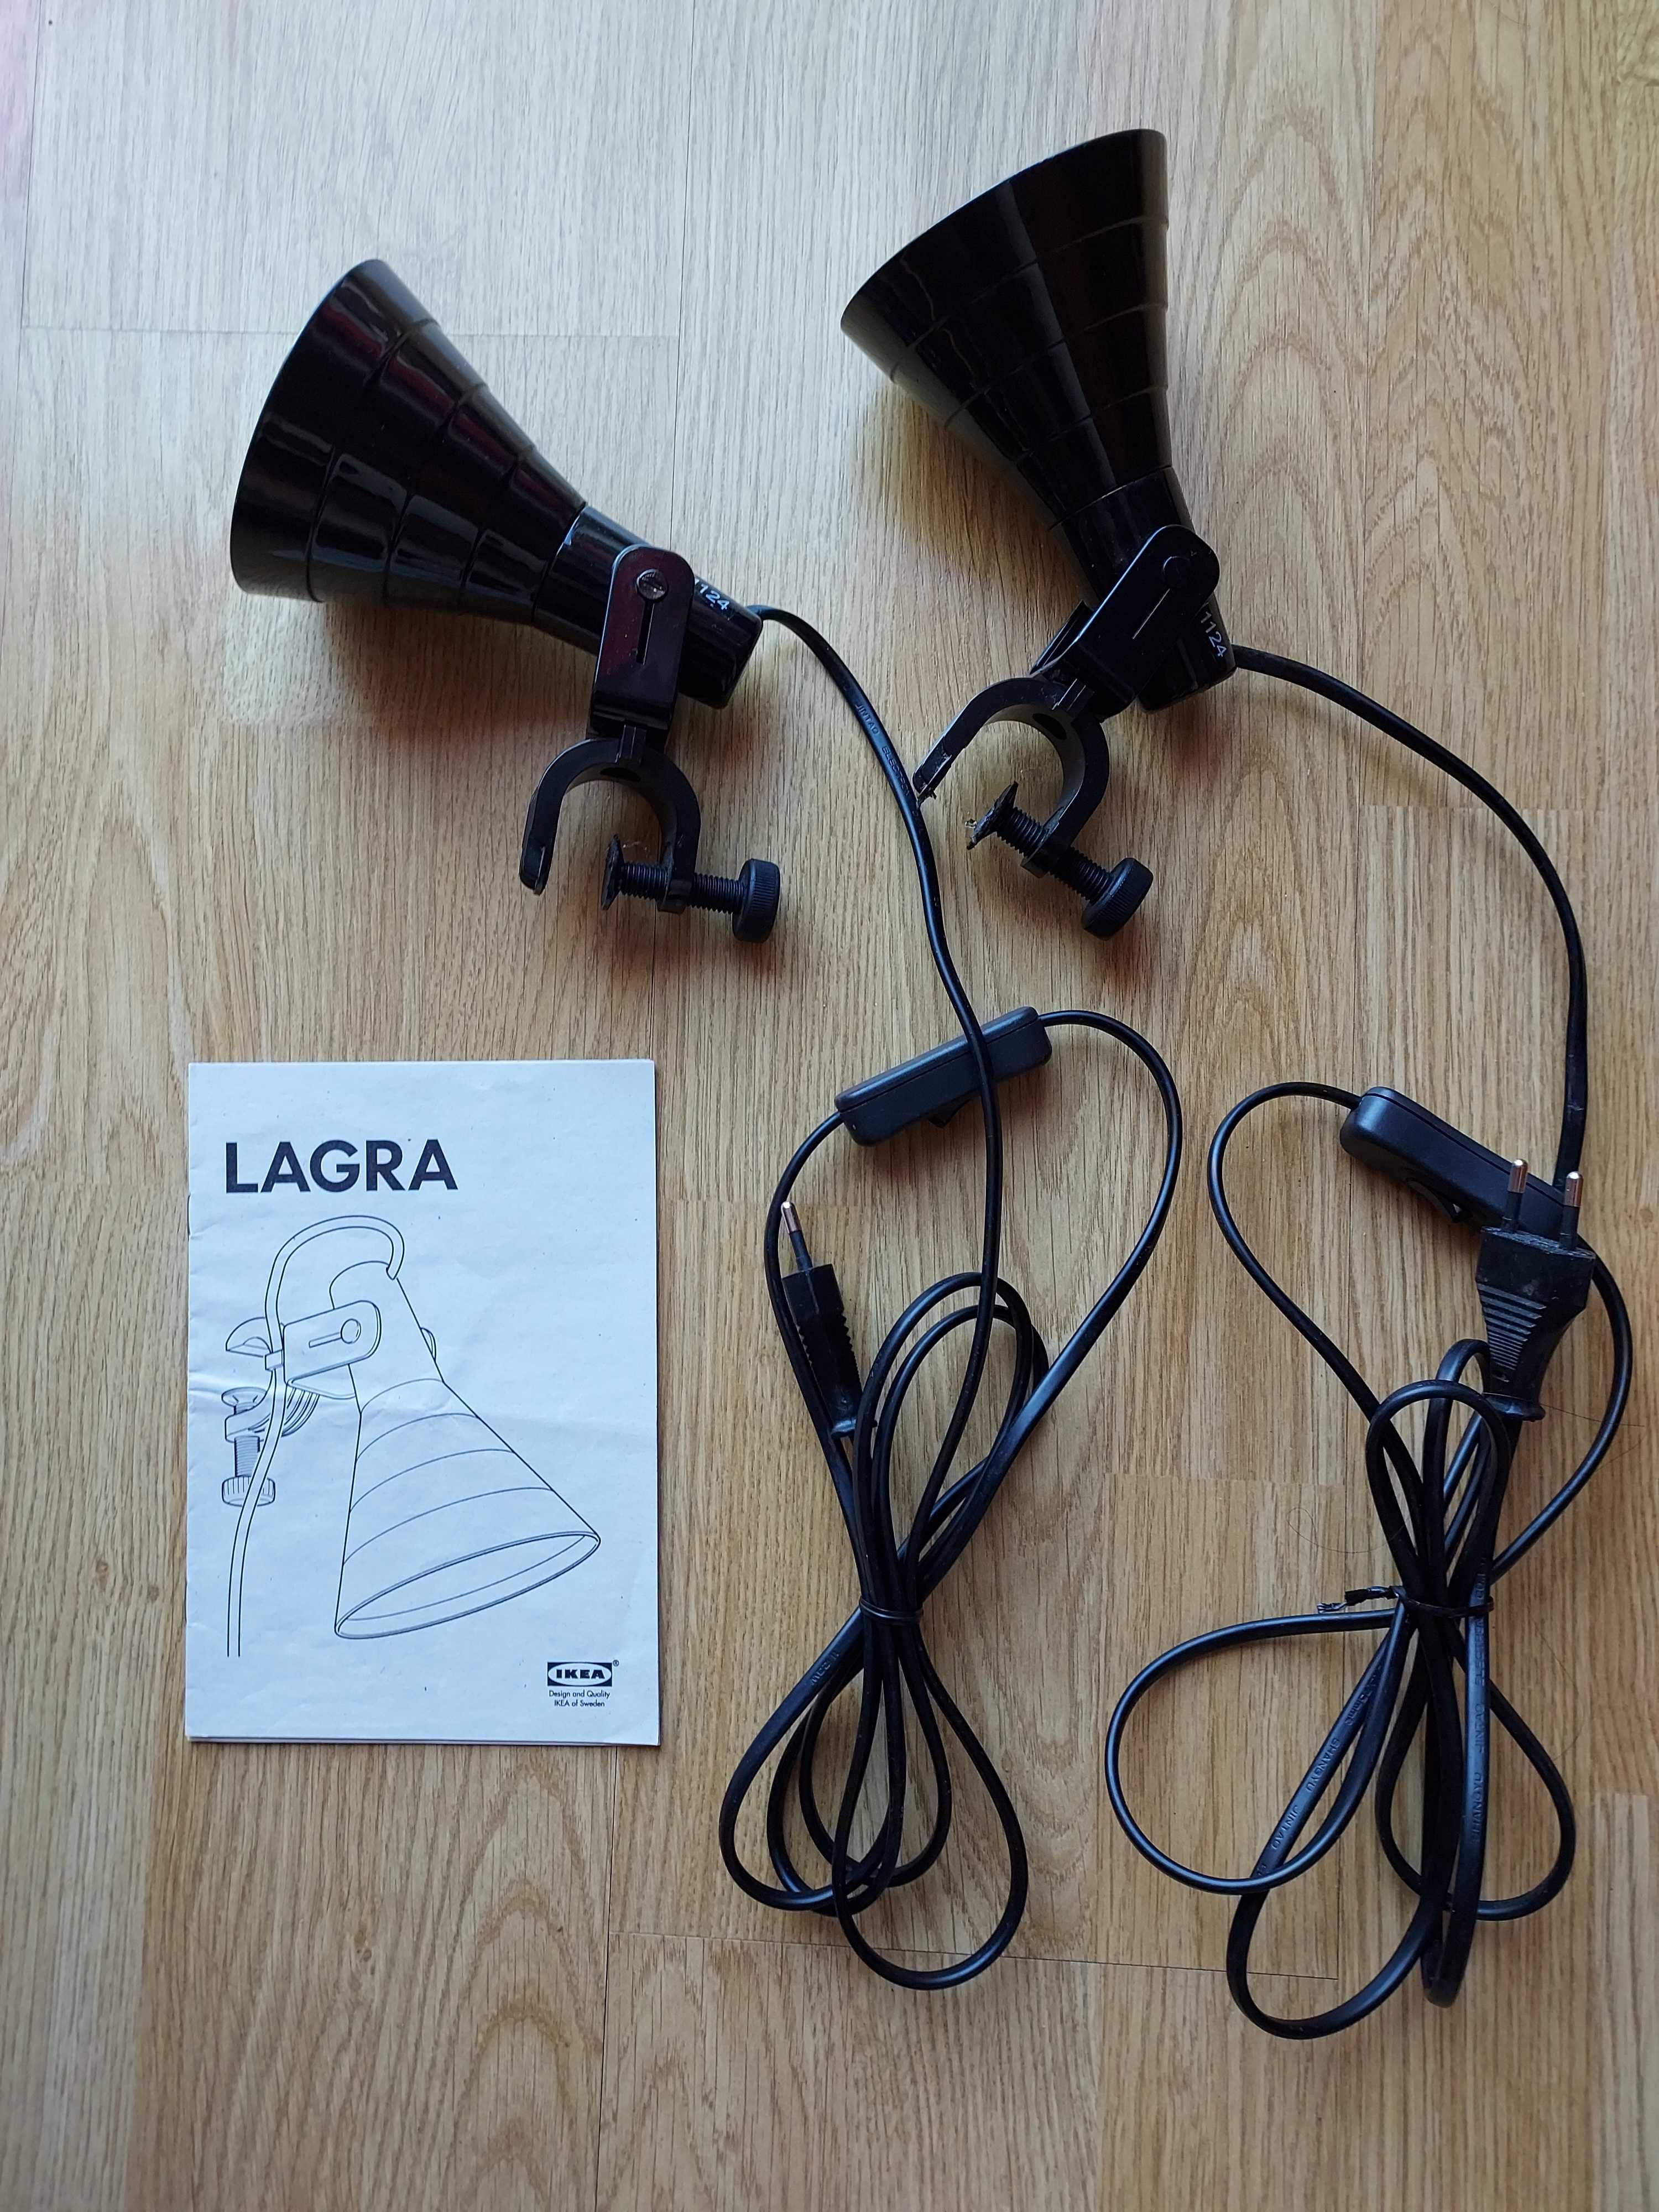 Holofote/Candeeiro Lagra Ikea